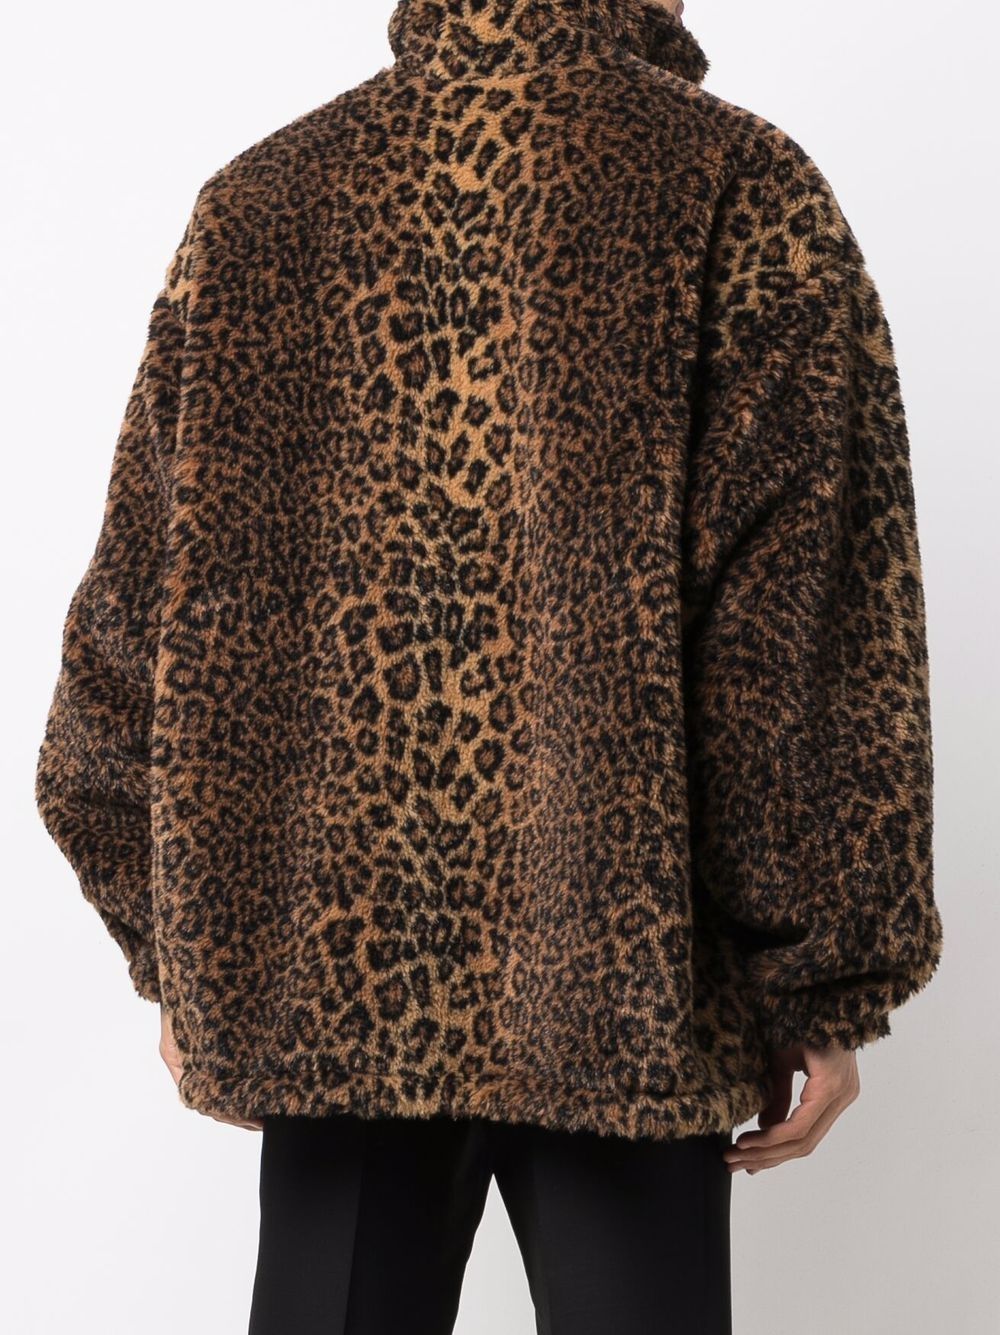 фото Balenciaga пальто оверсайз с леопардовым принтом